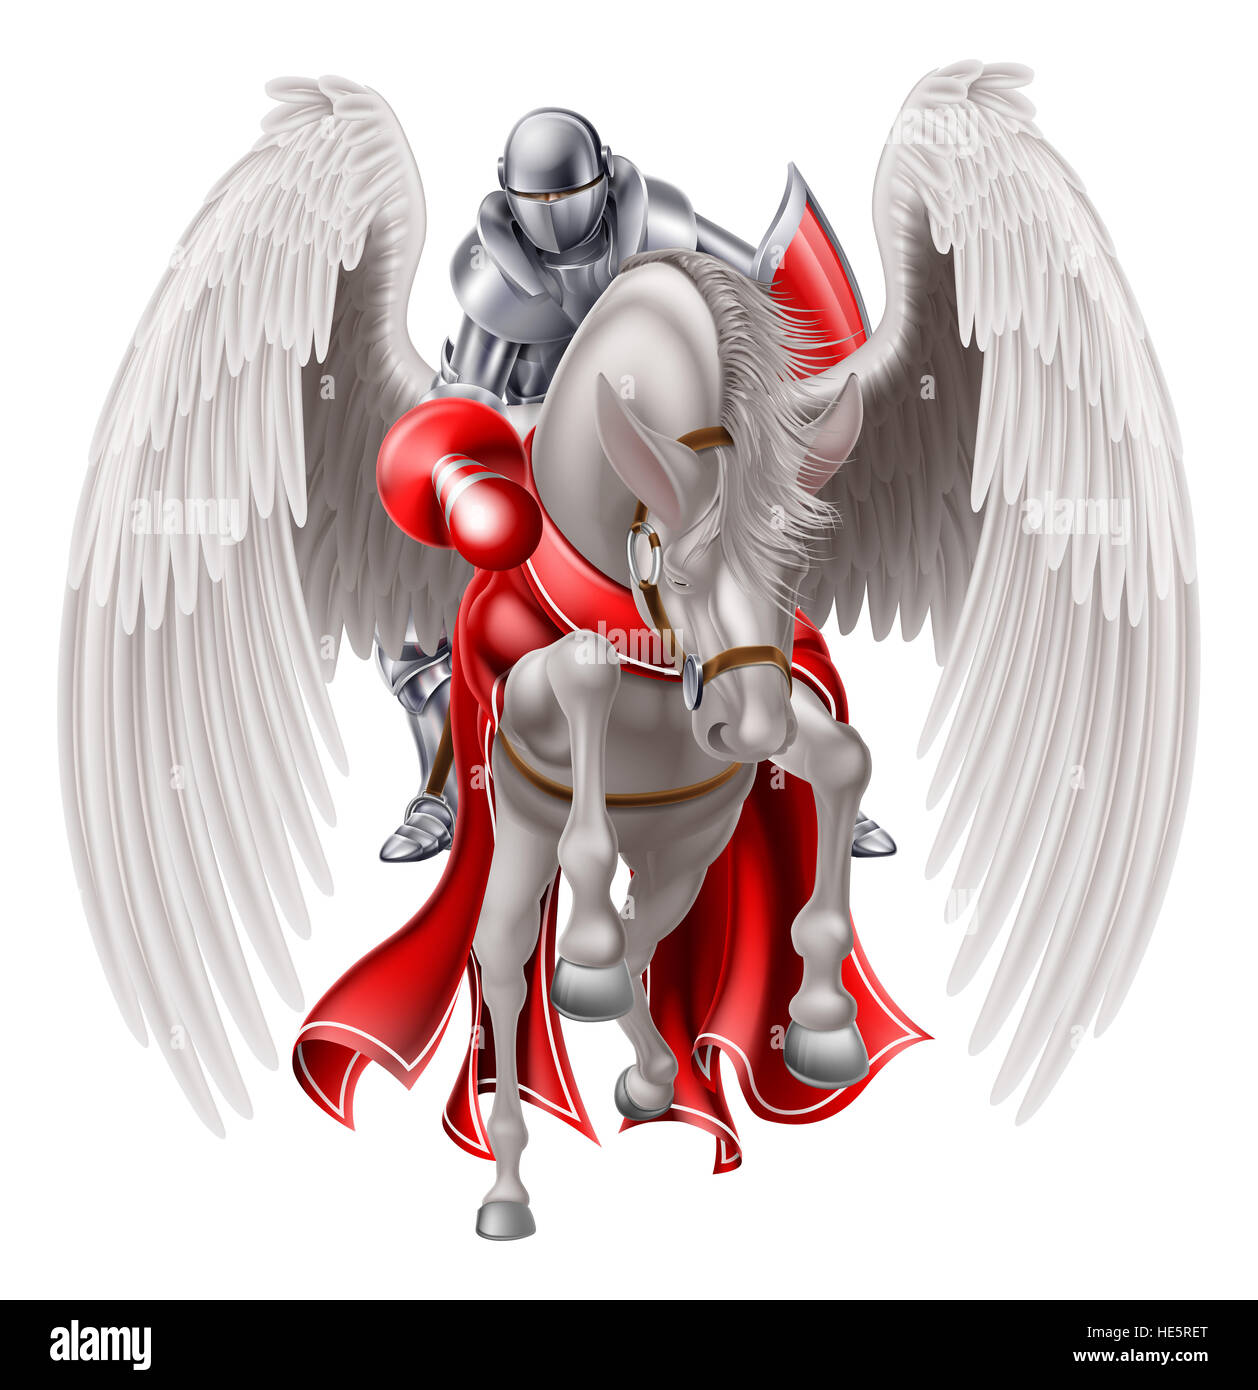 Chevalier médiéval en armure sur un cheval ailé Pégase mythologique légendaire tenant une lance prêt pour un combat de chevaliers ou Banque D'Images